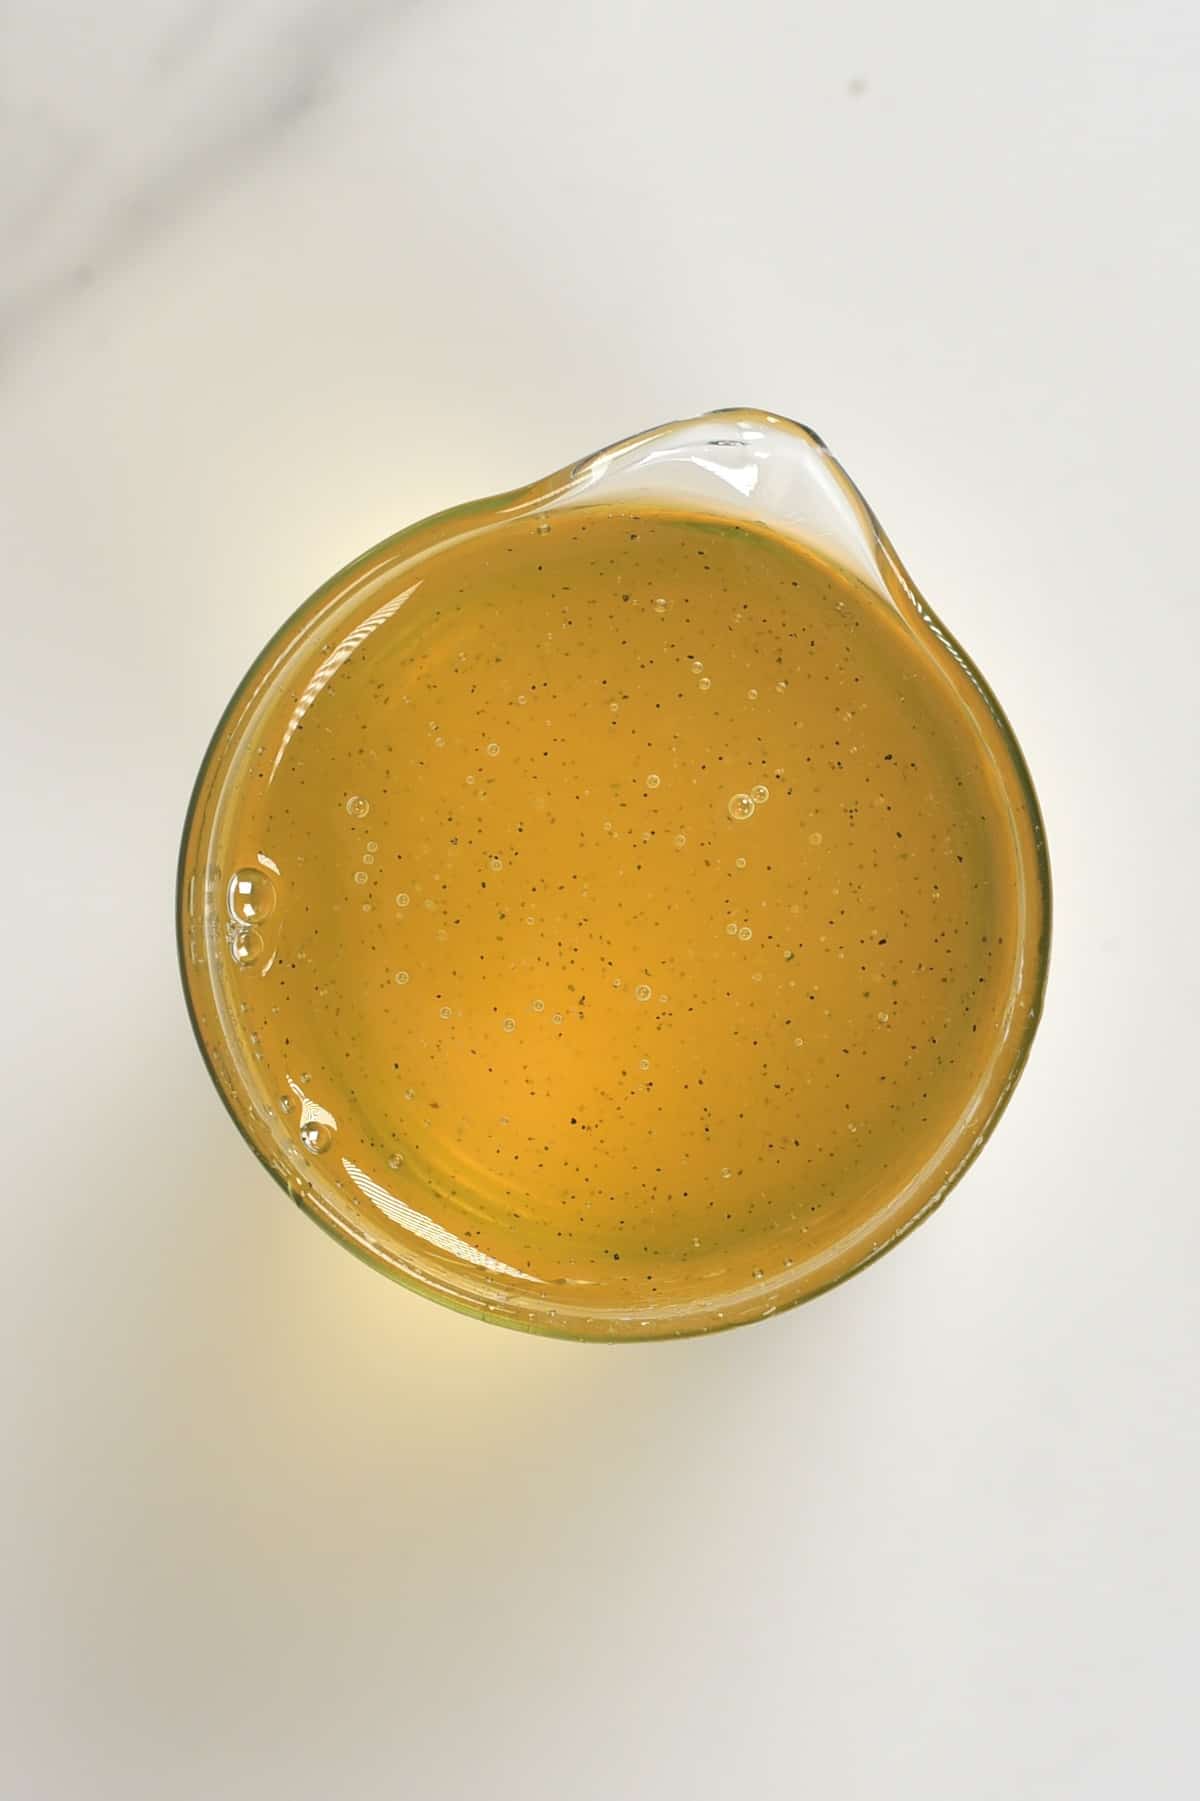 Baklava sugar syrup in a pitcher